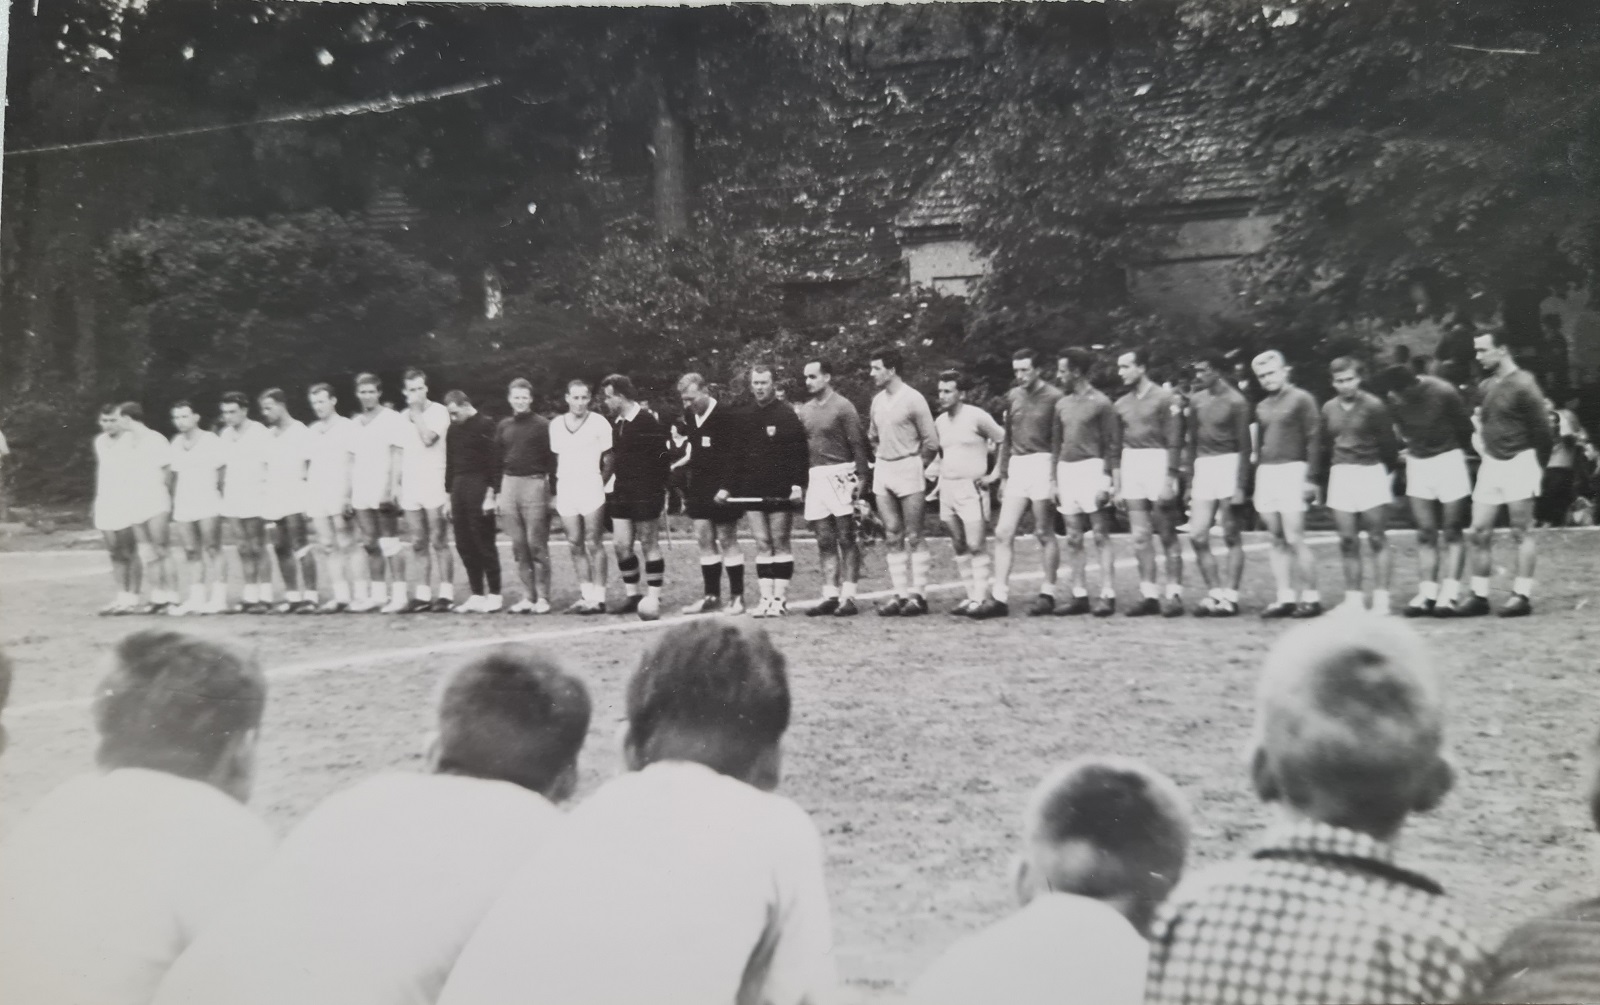 1963 hřiště za sokolovnou, Bělá - Esslingen (NSR), naši v tmavých dresech, utkání se kvůli dešti nedohrálo.